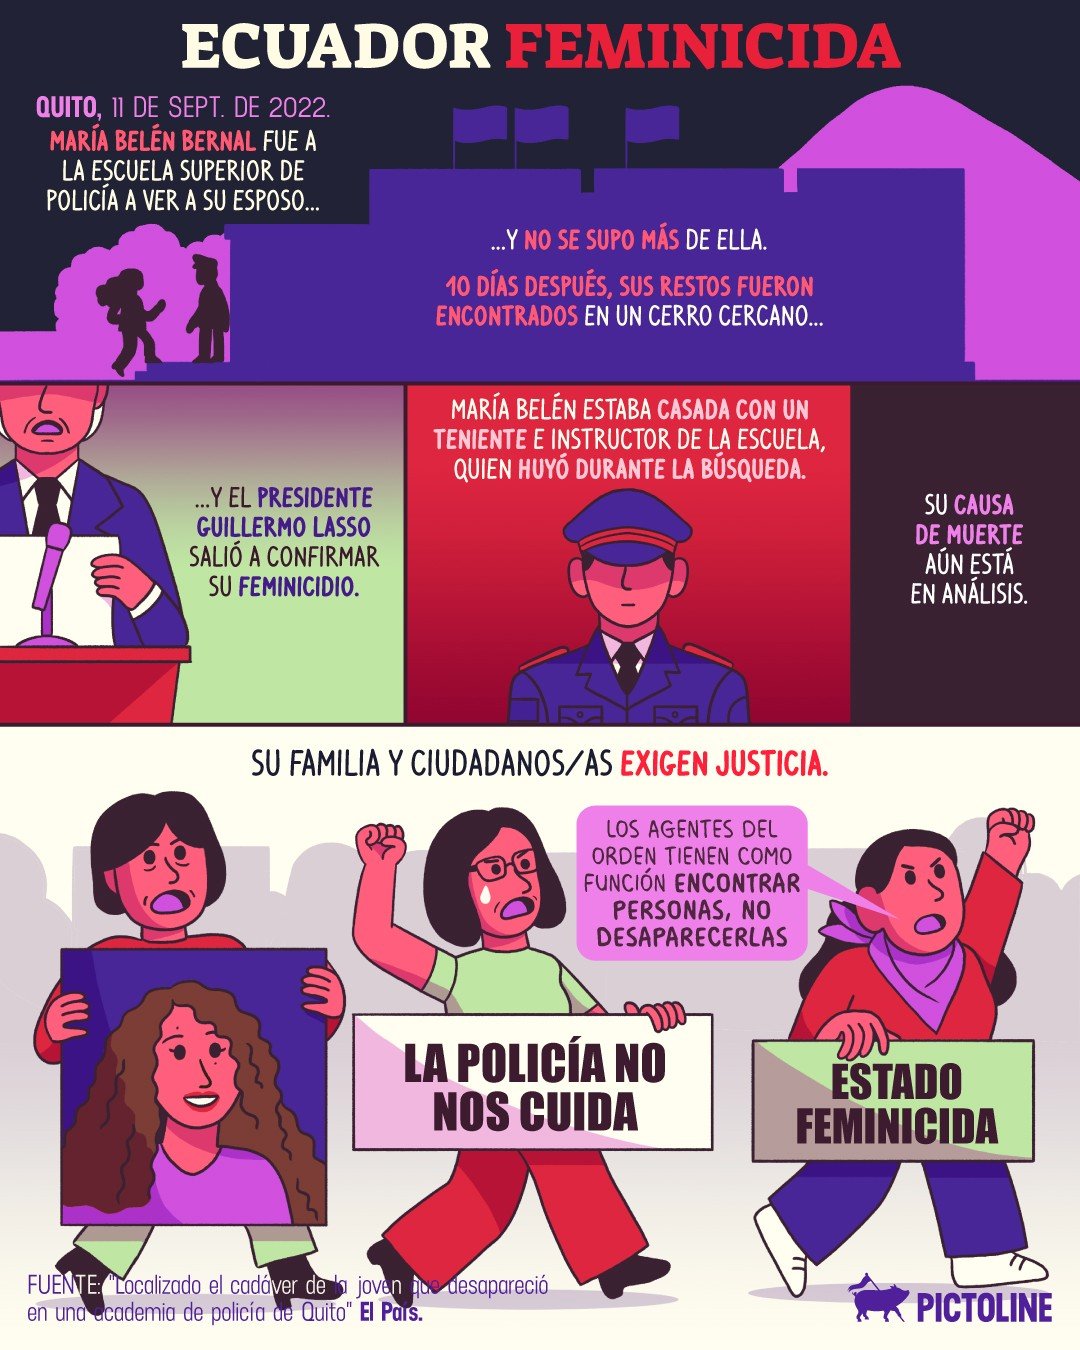 Ecuador feminicida: el caso de #MaríaBelénBernal, quien desapareció en una escuela de policías, ha desatado indignación y protestas en el país 👆 #ecuador #feminicidio #protestas #policia #desaparecida #justicia #indignacion